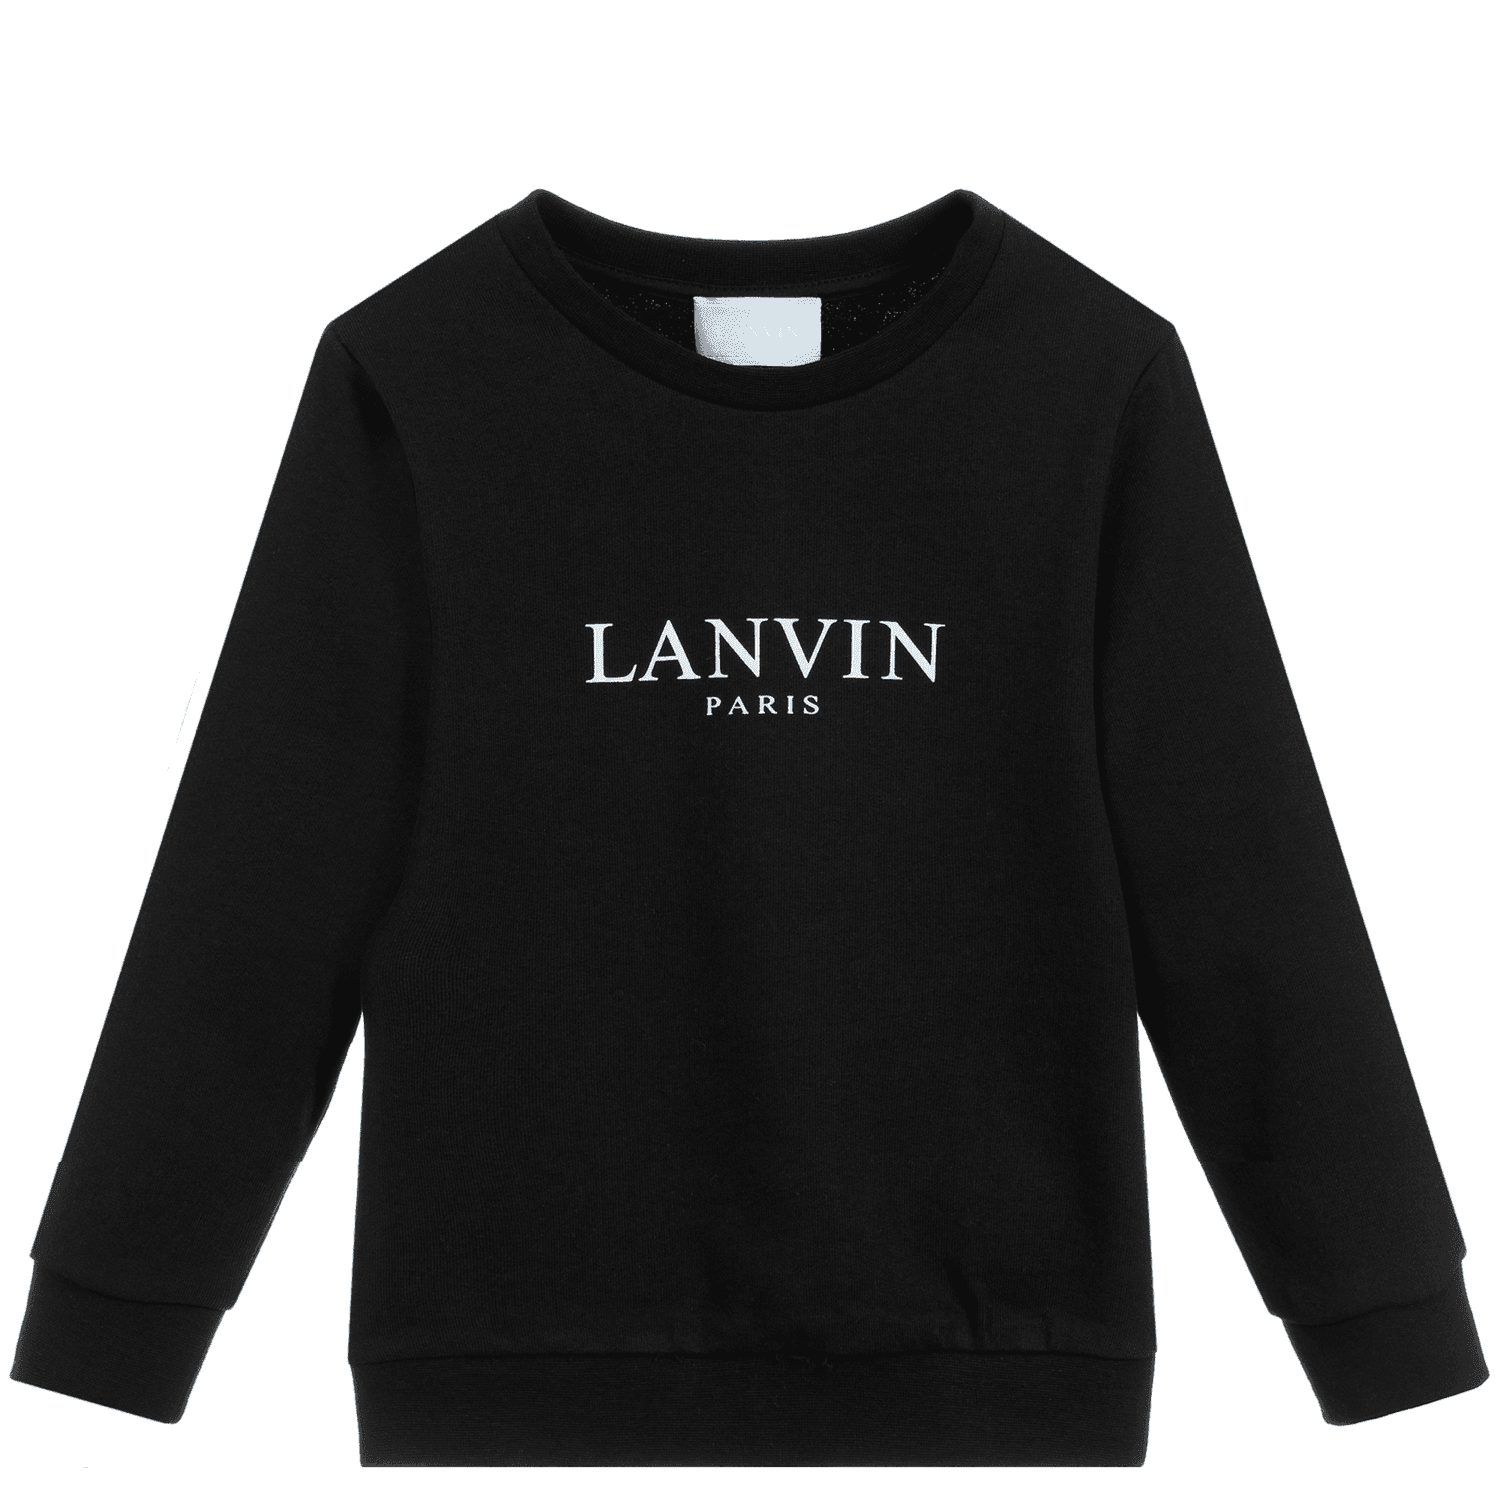 Lanvin Boys Logo Sweatshirt Black 8Y